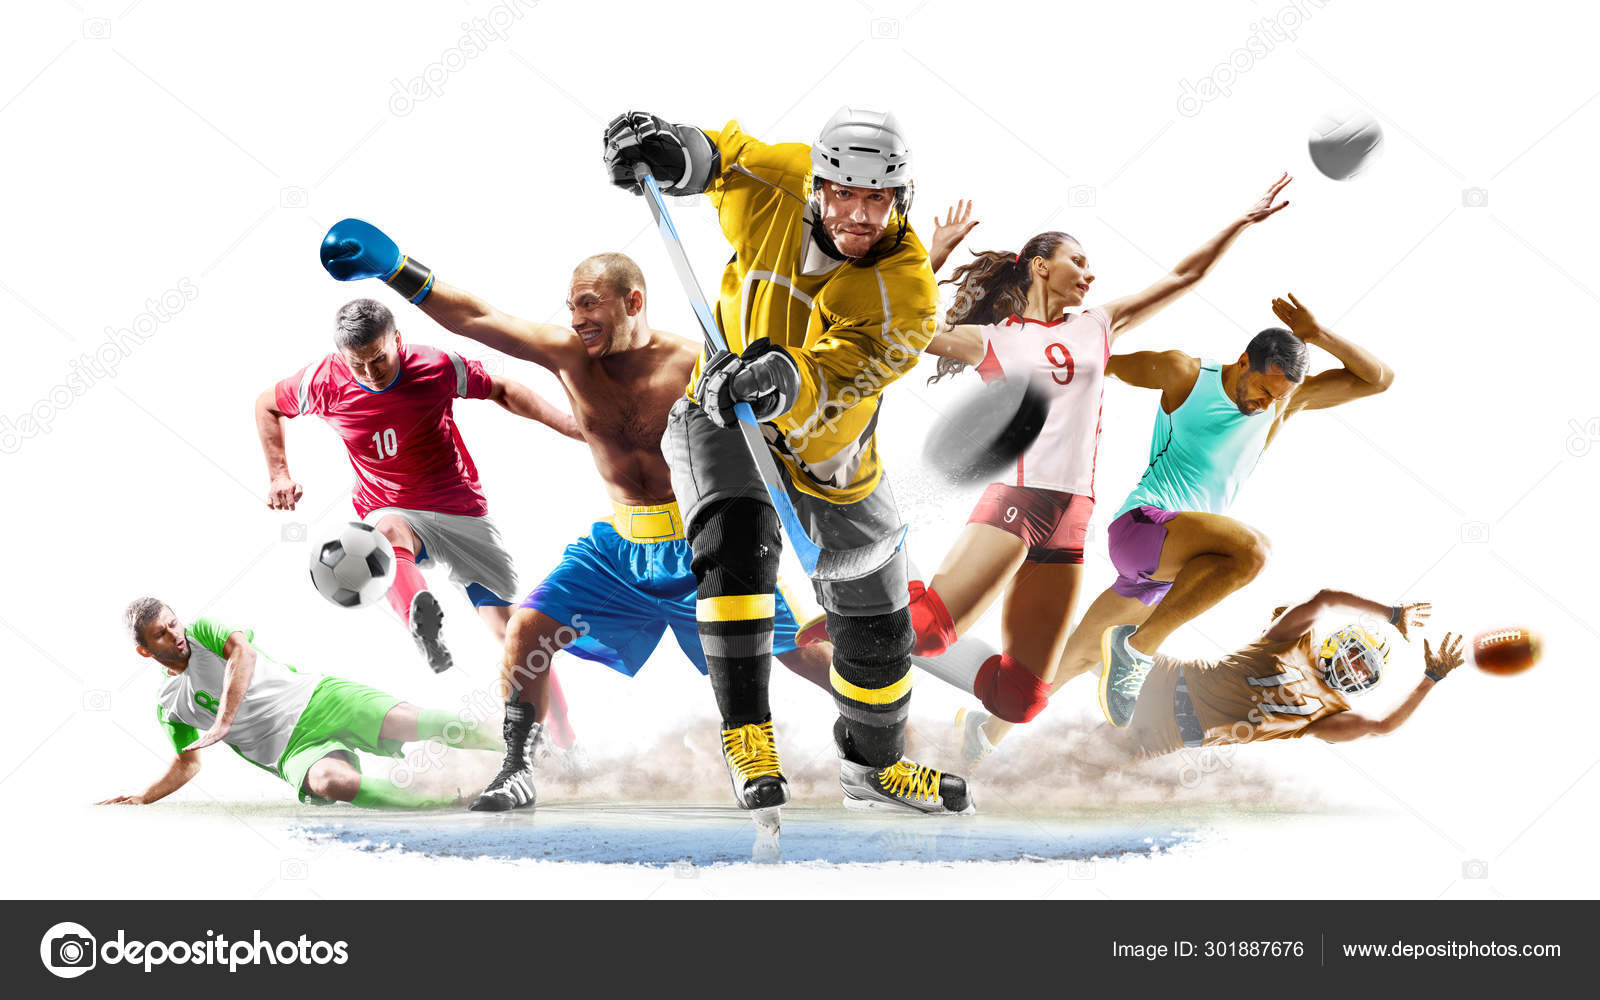 Multi esporte colagem futebol boxe futebol voleyball hóquei no gelo em  execução no fundo branco fotos, imagens de © 103tnn #301887676